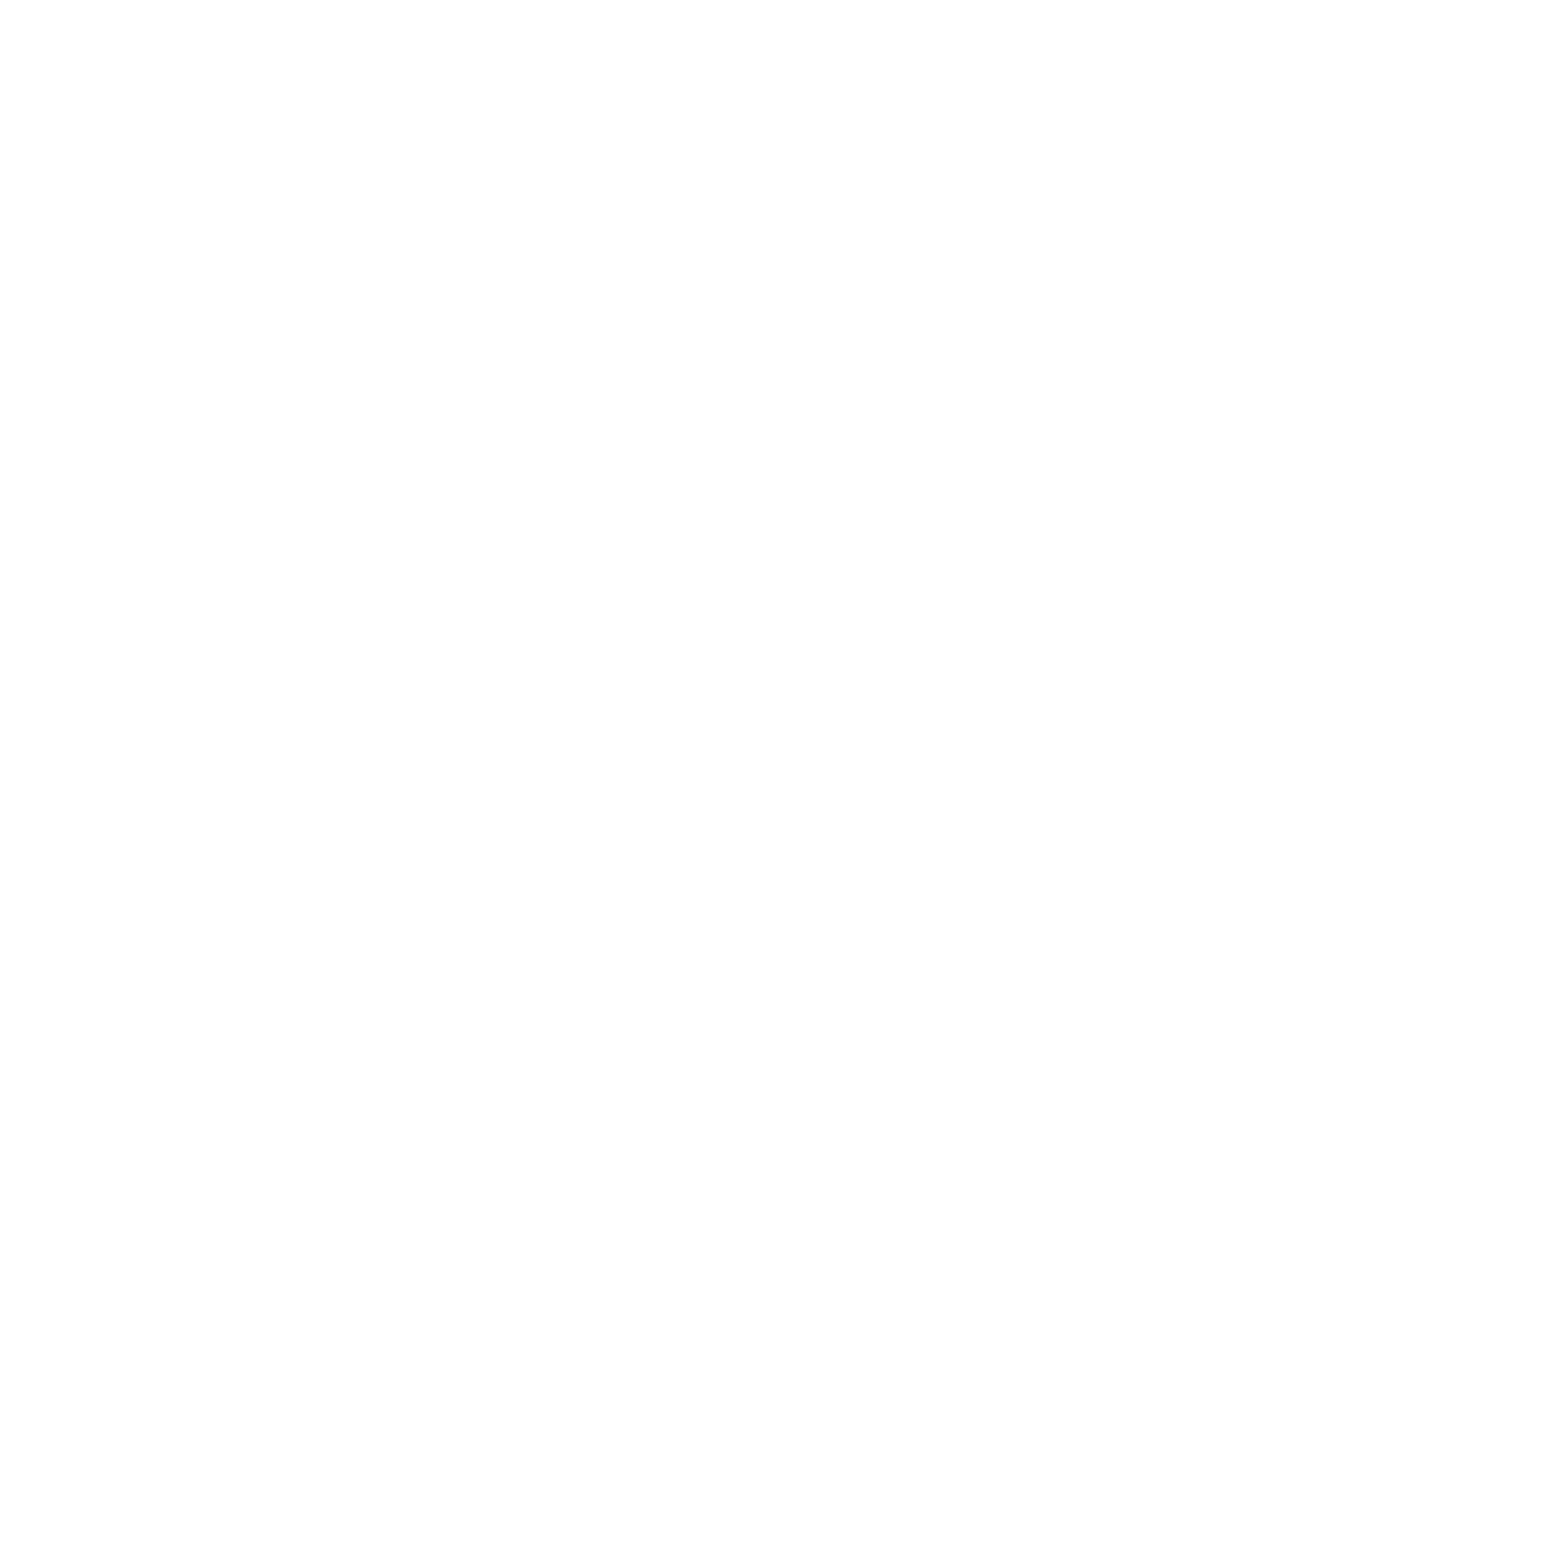 Asia Cement logo pour fonds sombres (PNG transparent)